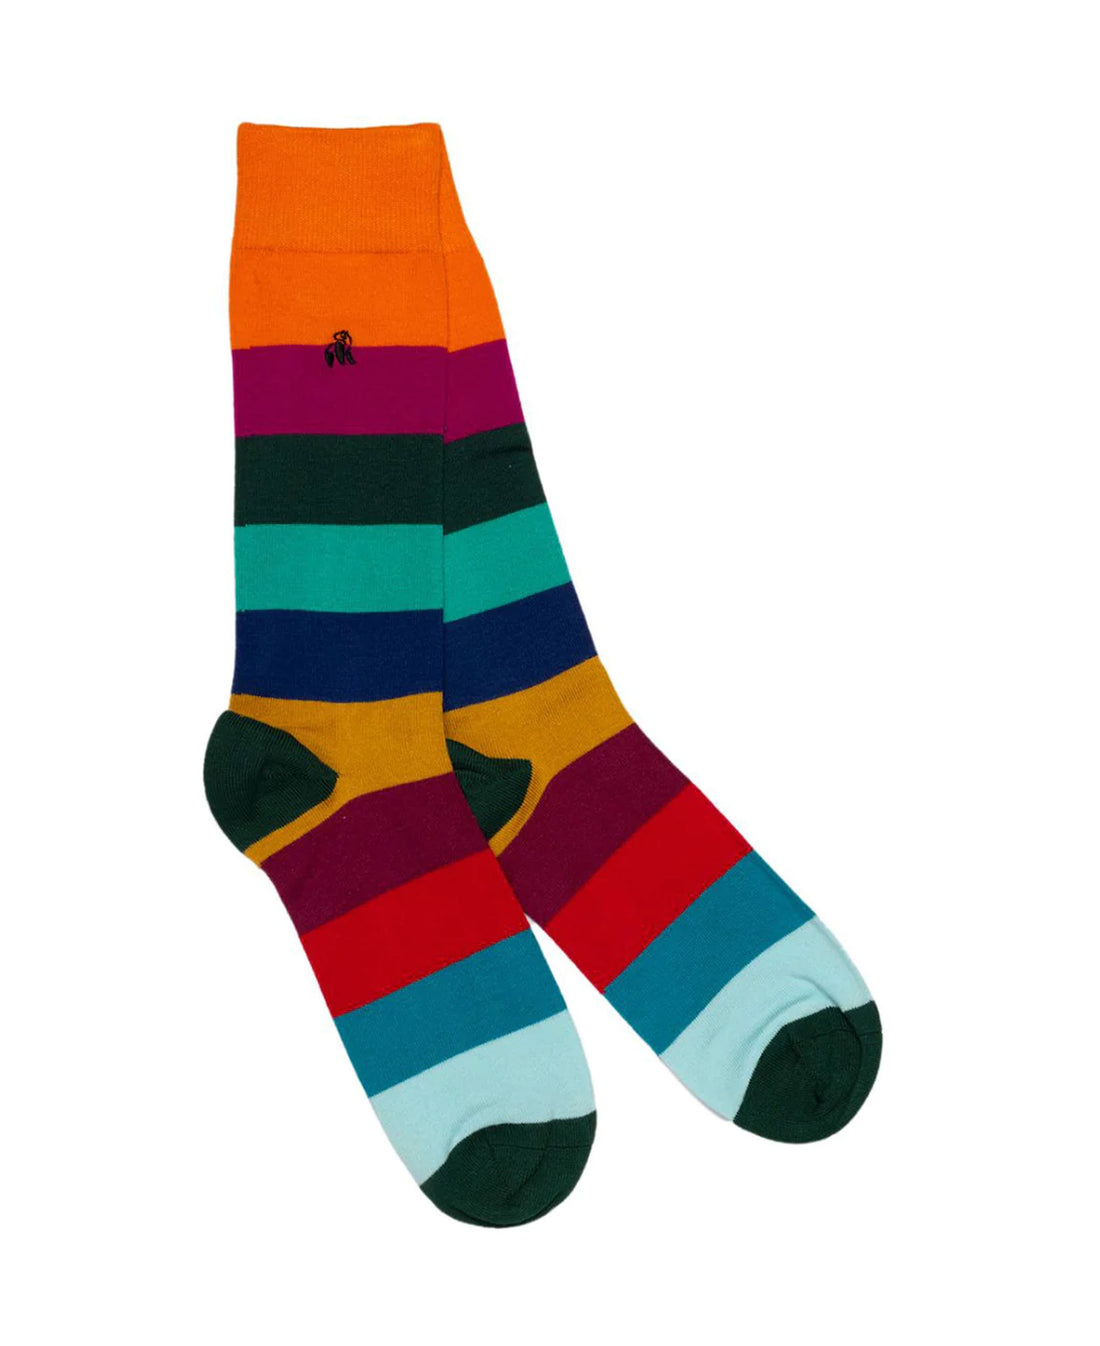 Striped Socks - Multi Block Stripe